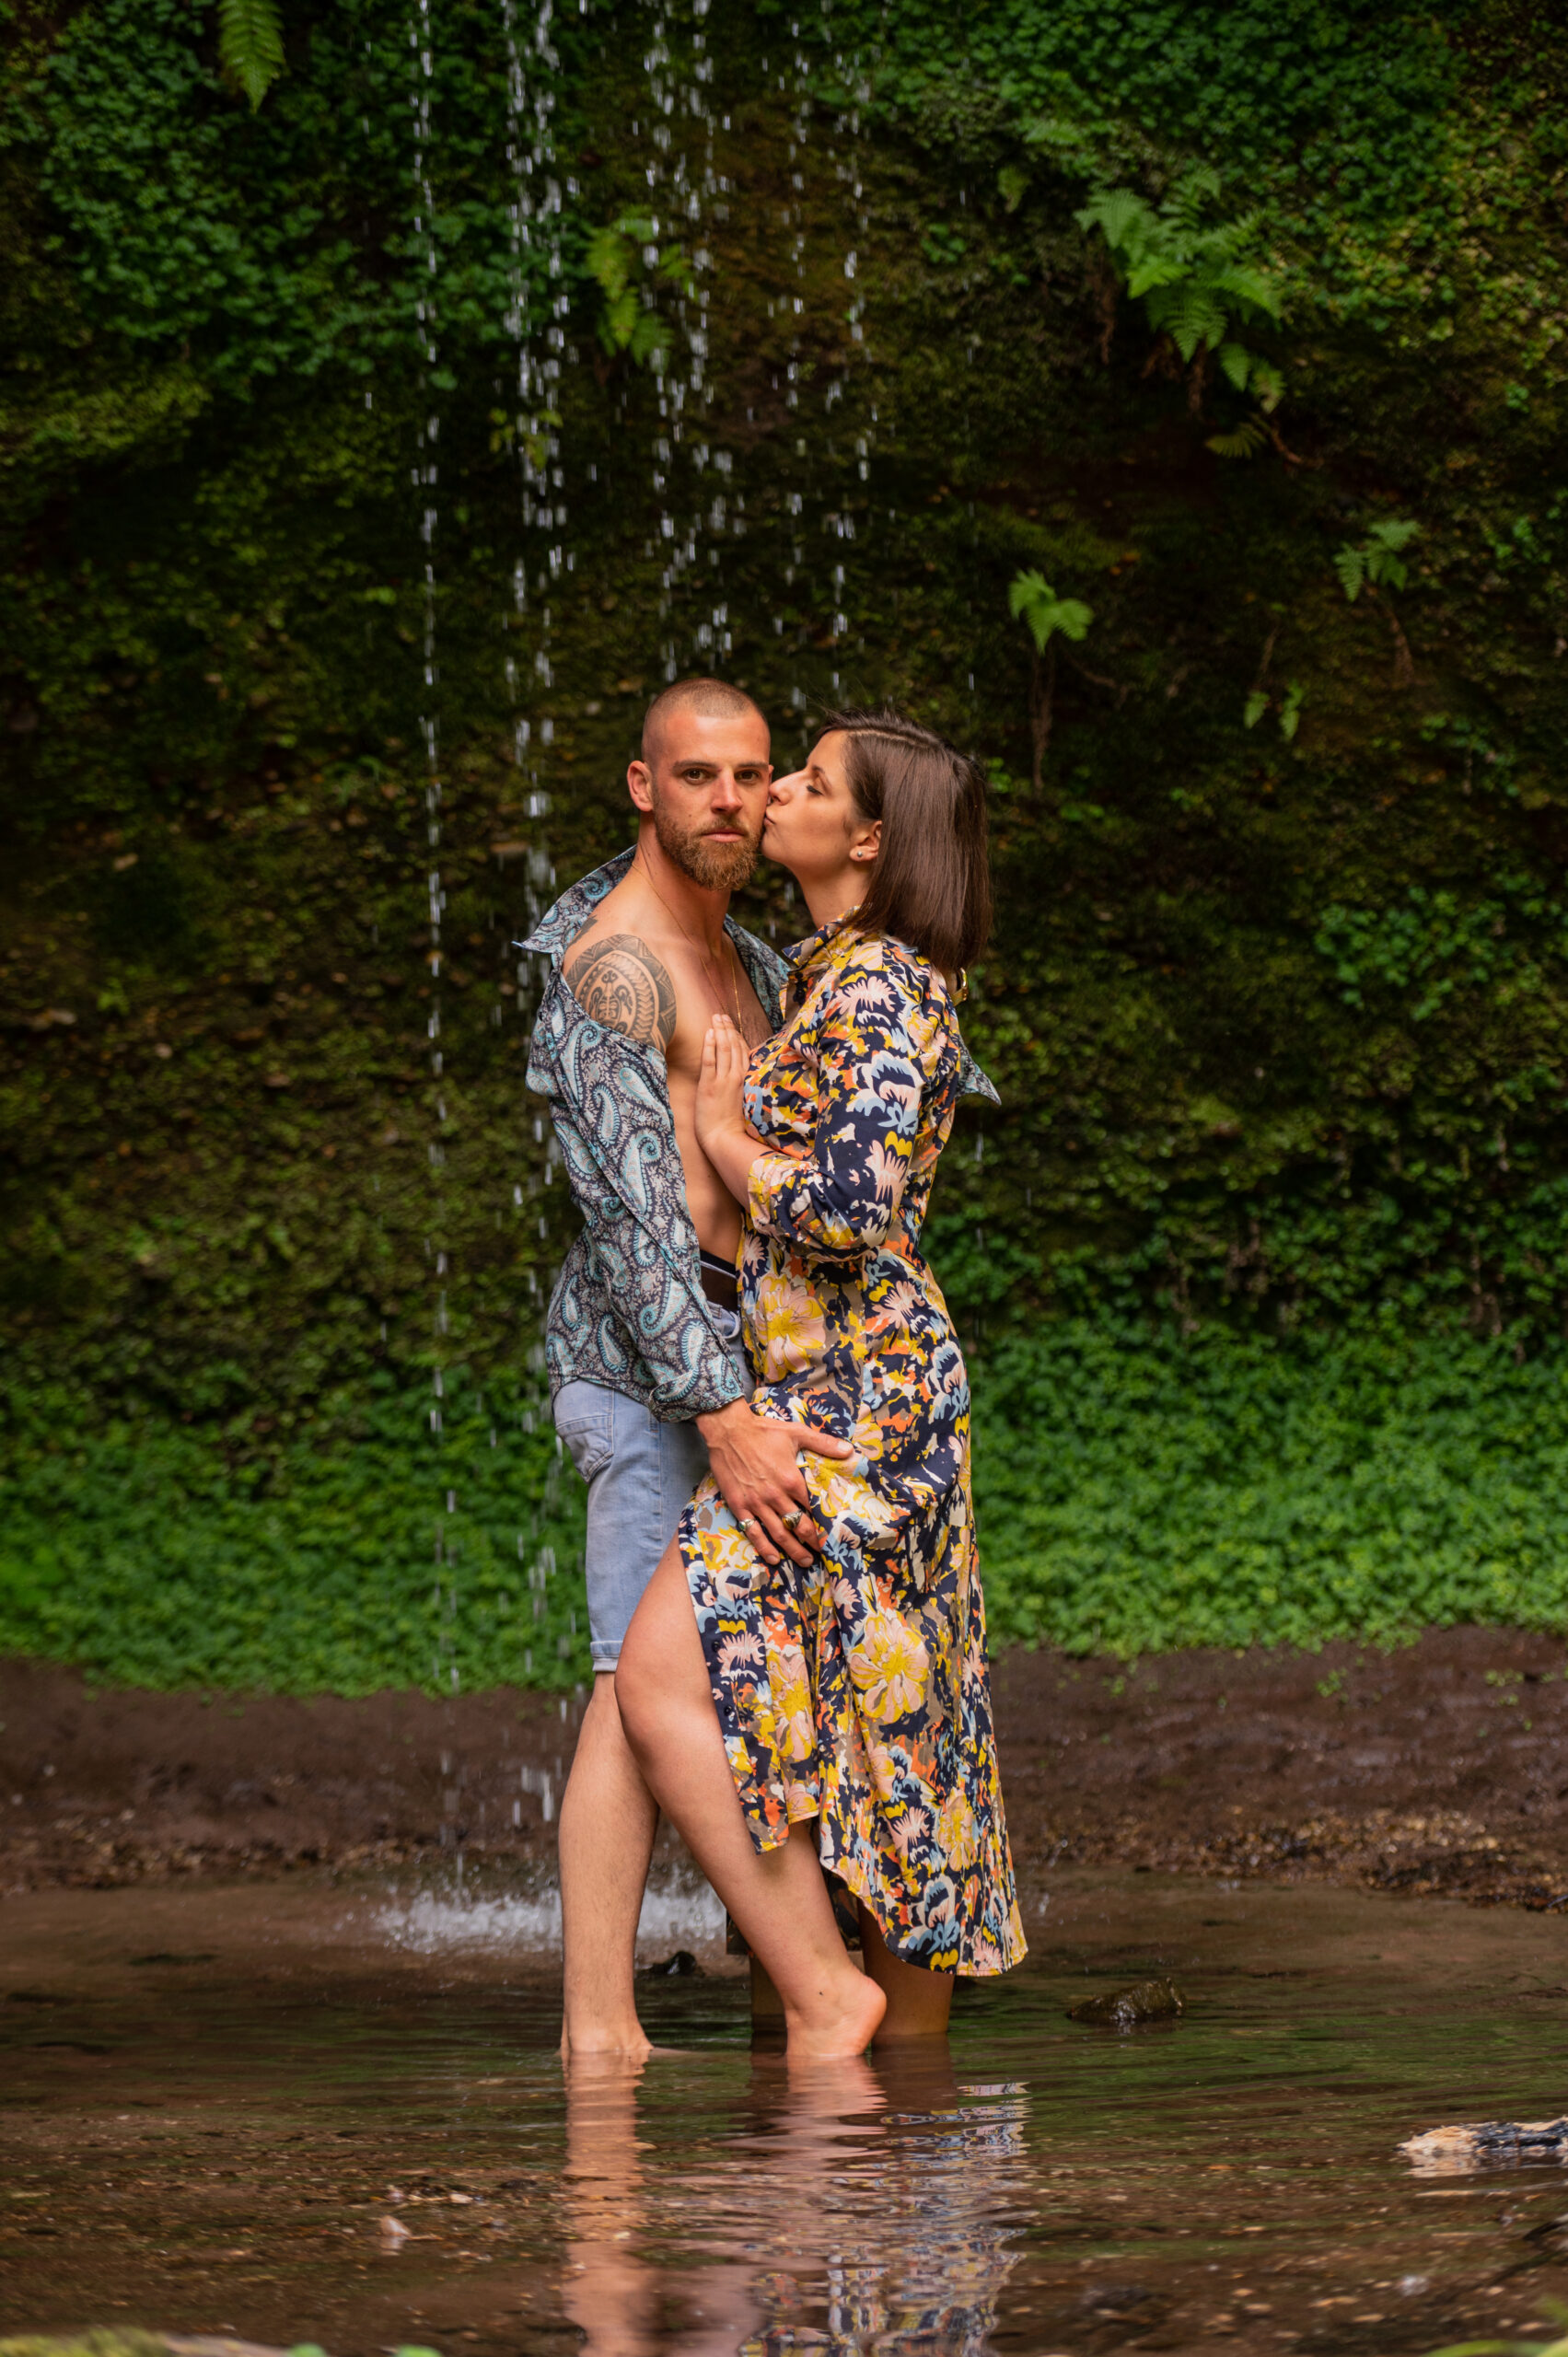 photographe professionnelle couple amour complicité tendresse extérieur arbre foret after Day mariage couleur naturelle regard amoureuxcascade alsacienne